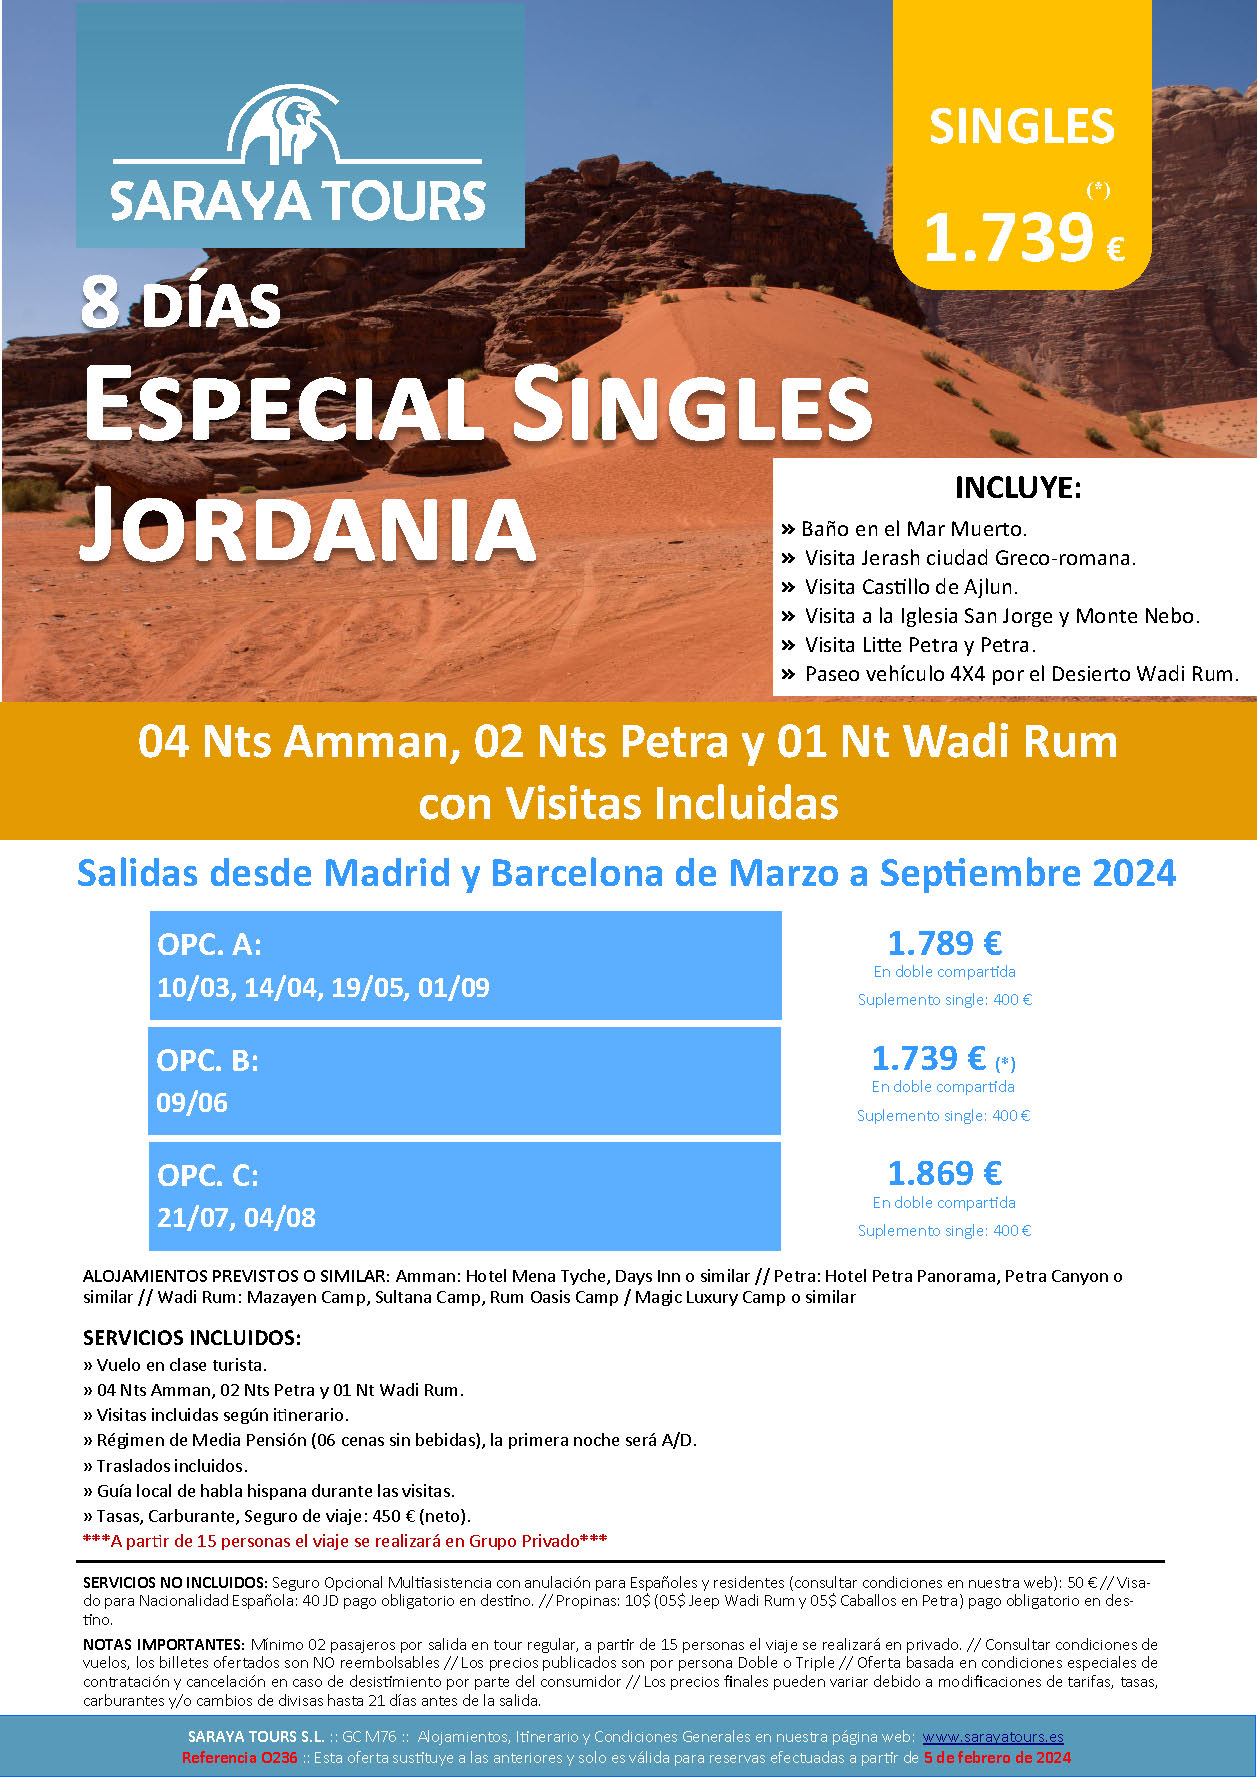 Oferta Saraya Tours Circuito Jordania 8 dias Especial Singles salidas Abril a Septiembre 2024 en vuelo directo desde Madrid